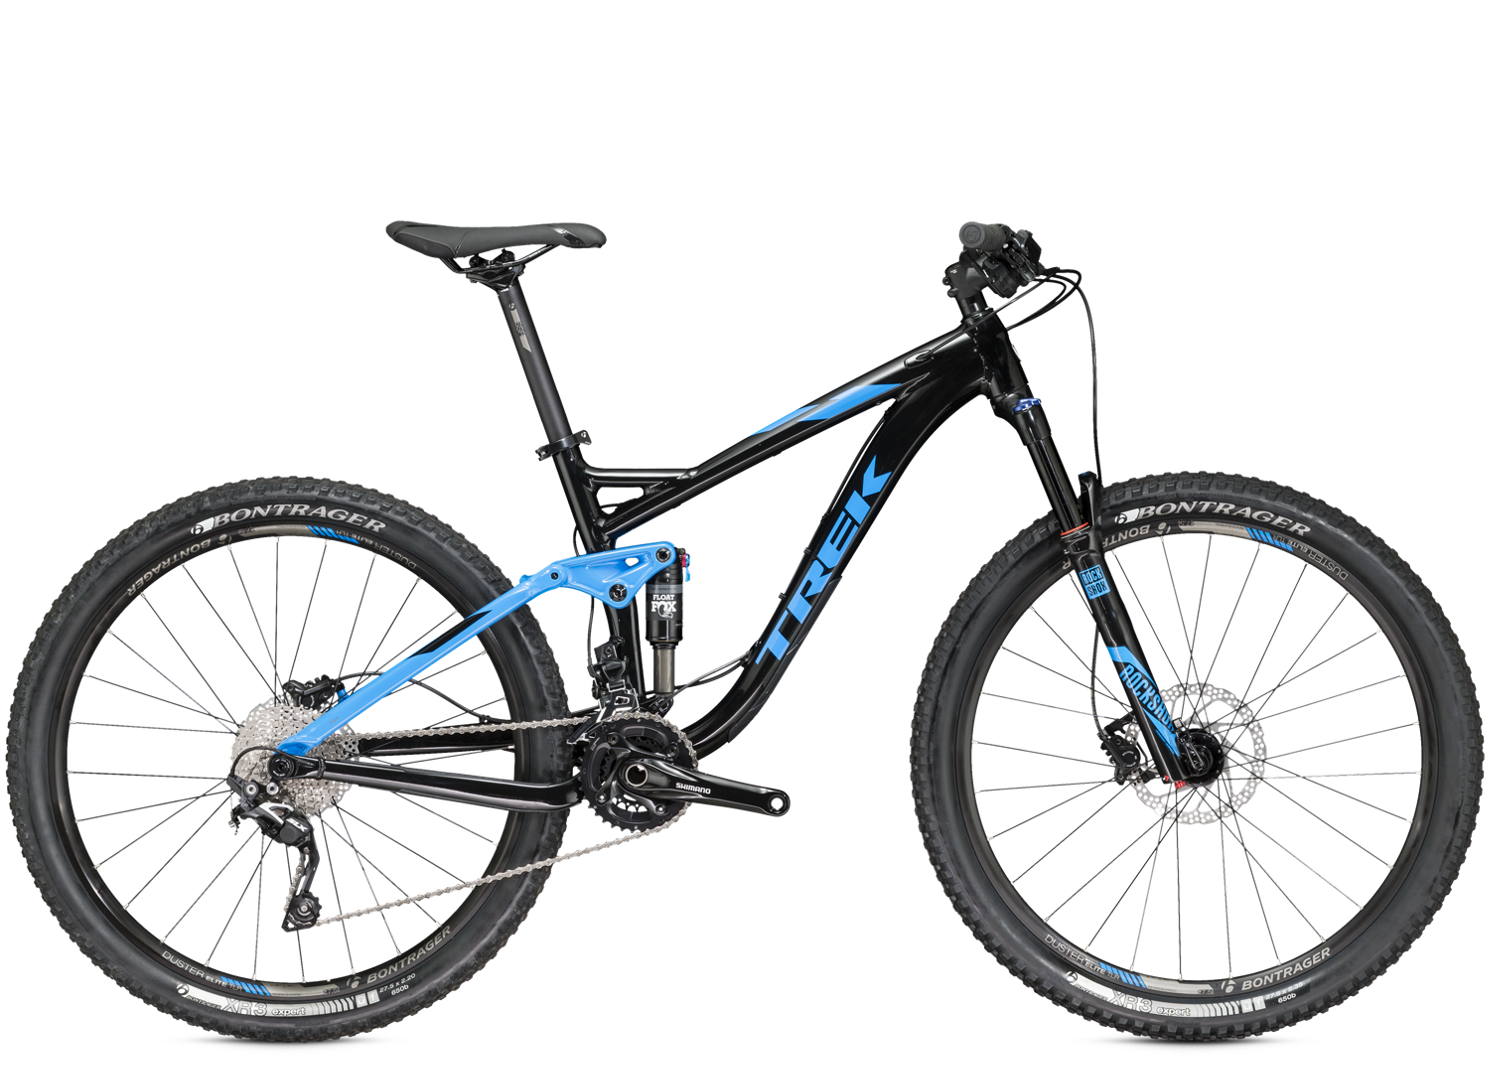 verzoek knijpen spiegel 2016 Fuel EX 7 27.5 - Bike Archive - Trek Bicycle